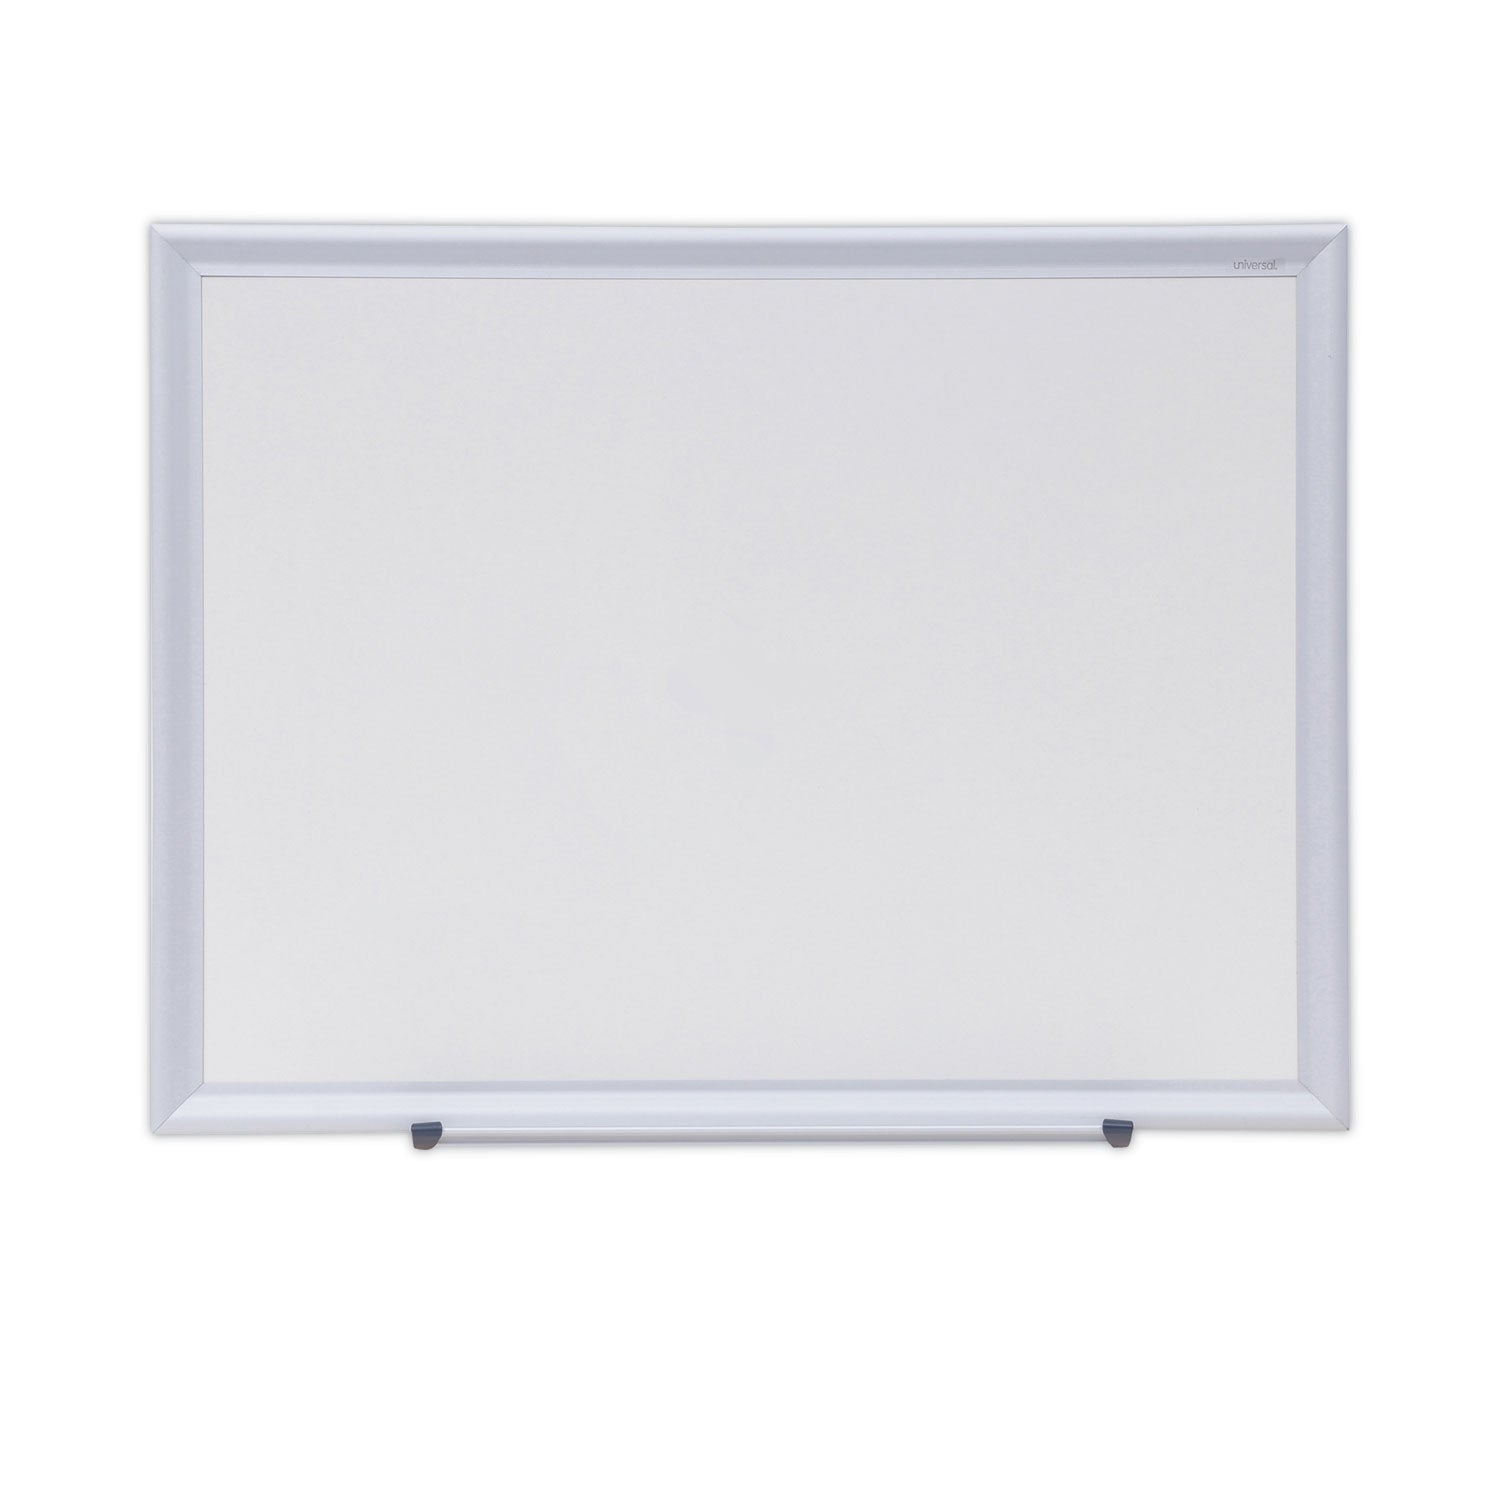 Deluxe Melamine Dry Erase Board, 24 x 18, Melamine White Surface, Silver Aluminum Frame - 